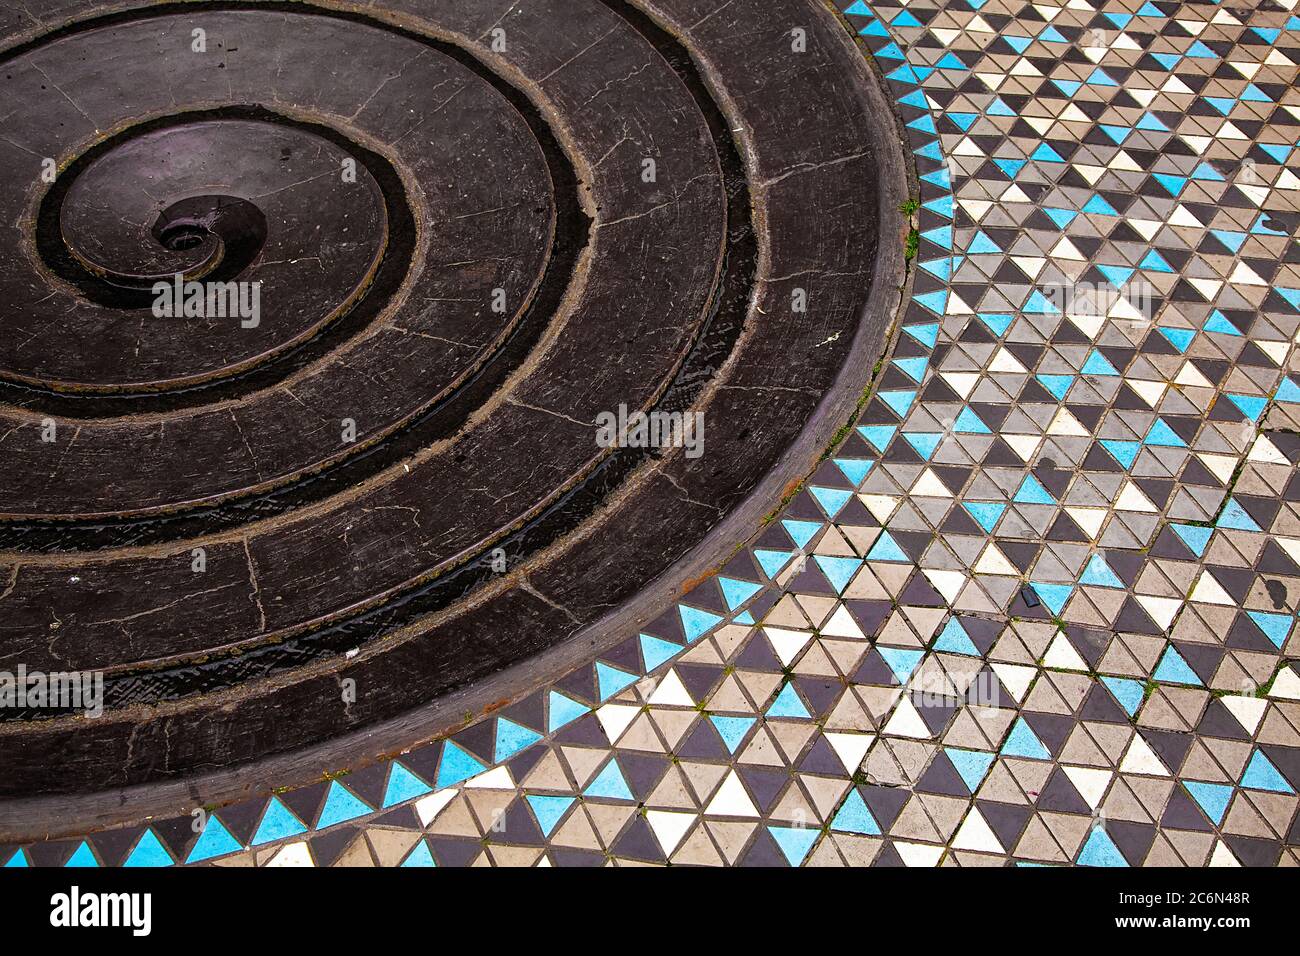 Partie d'une fontaine en spirale abstraite avec sol en mosaïque, vue sur le dessus. Endroits inhabituels en Allemagne. Banque D'Images